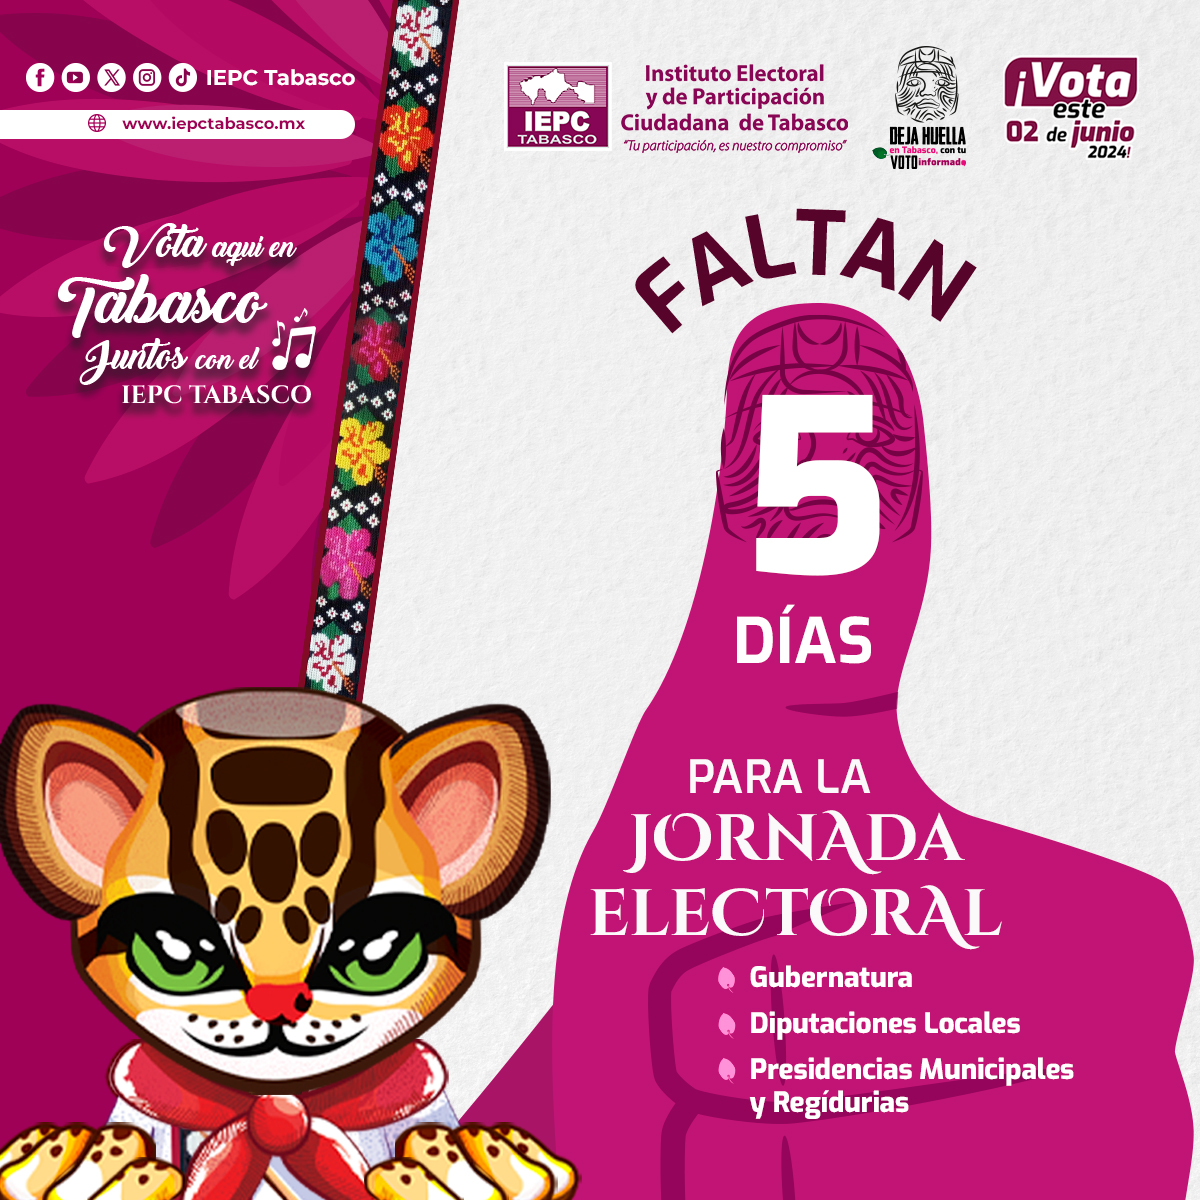 Faltan 5 días para la Jornada Electoral del #2deJunio 🗳️ #DejaHuella con tu #VotoInformado 👍🏻

Ubica tu distrito en: iepctabasco.mx/ubica-tu-distr…